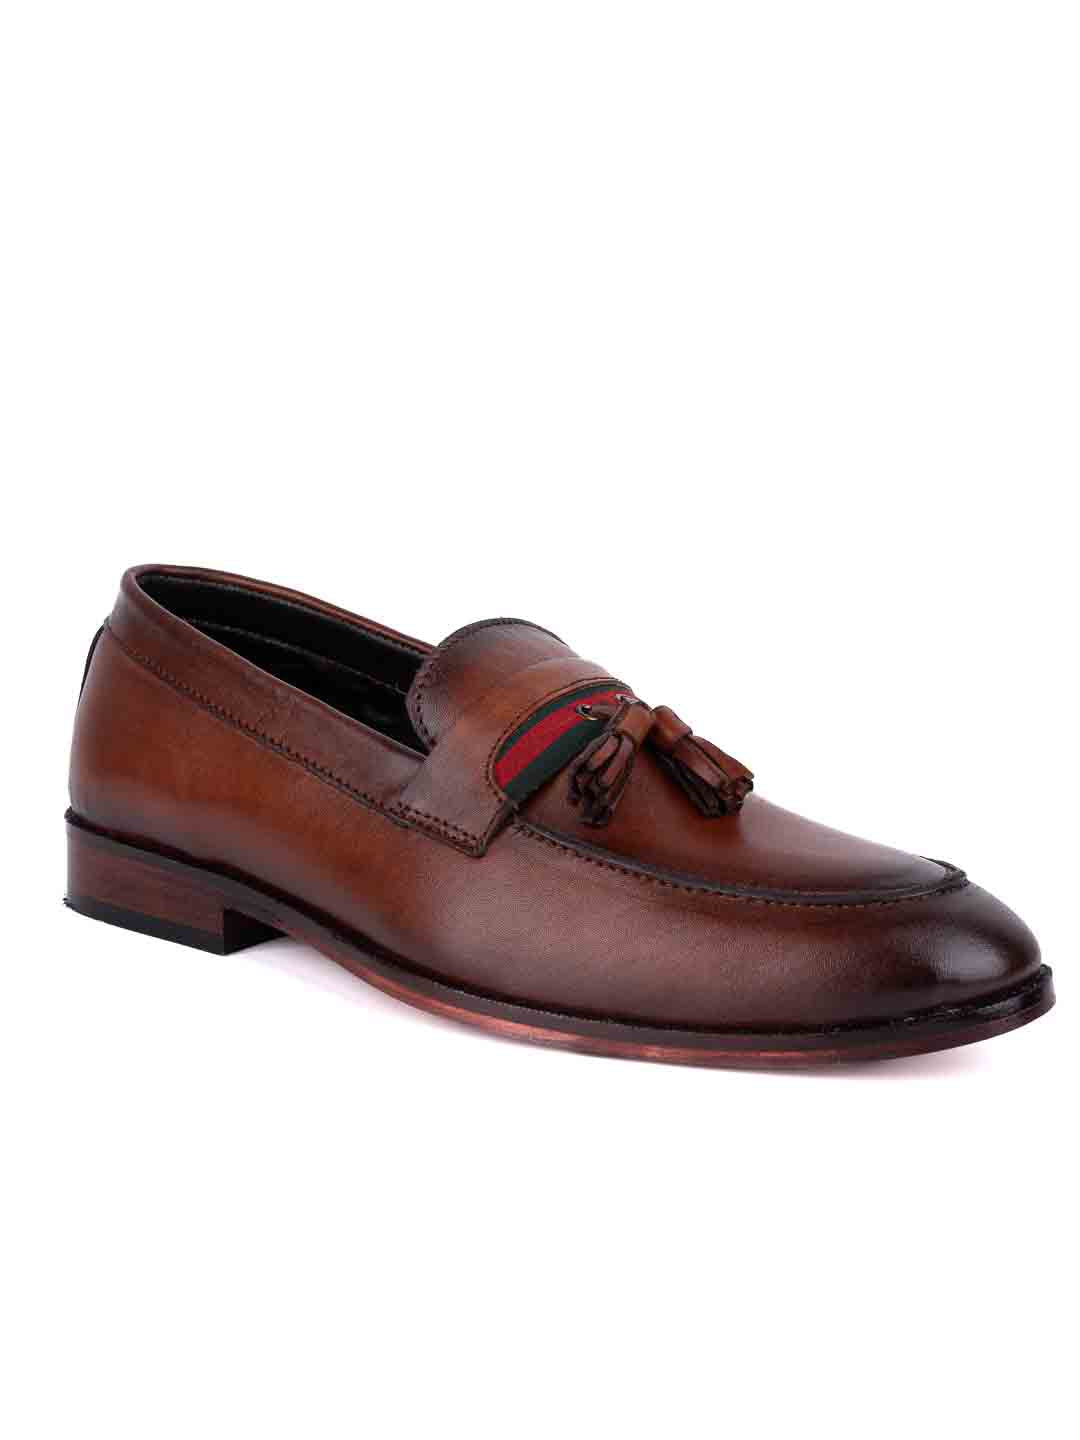 Footwear, Men Footwear, Brown Formal Loafers